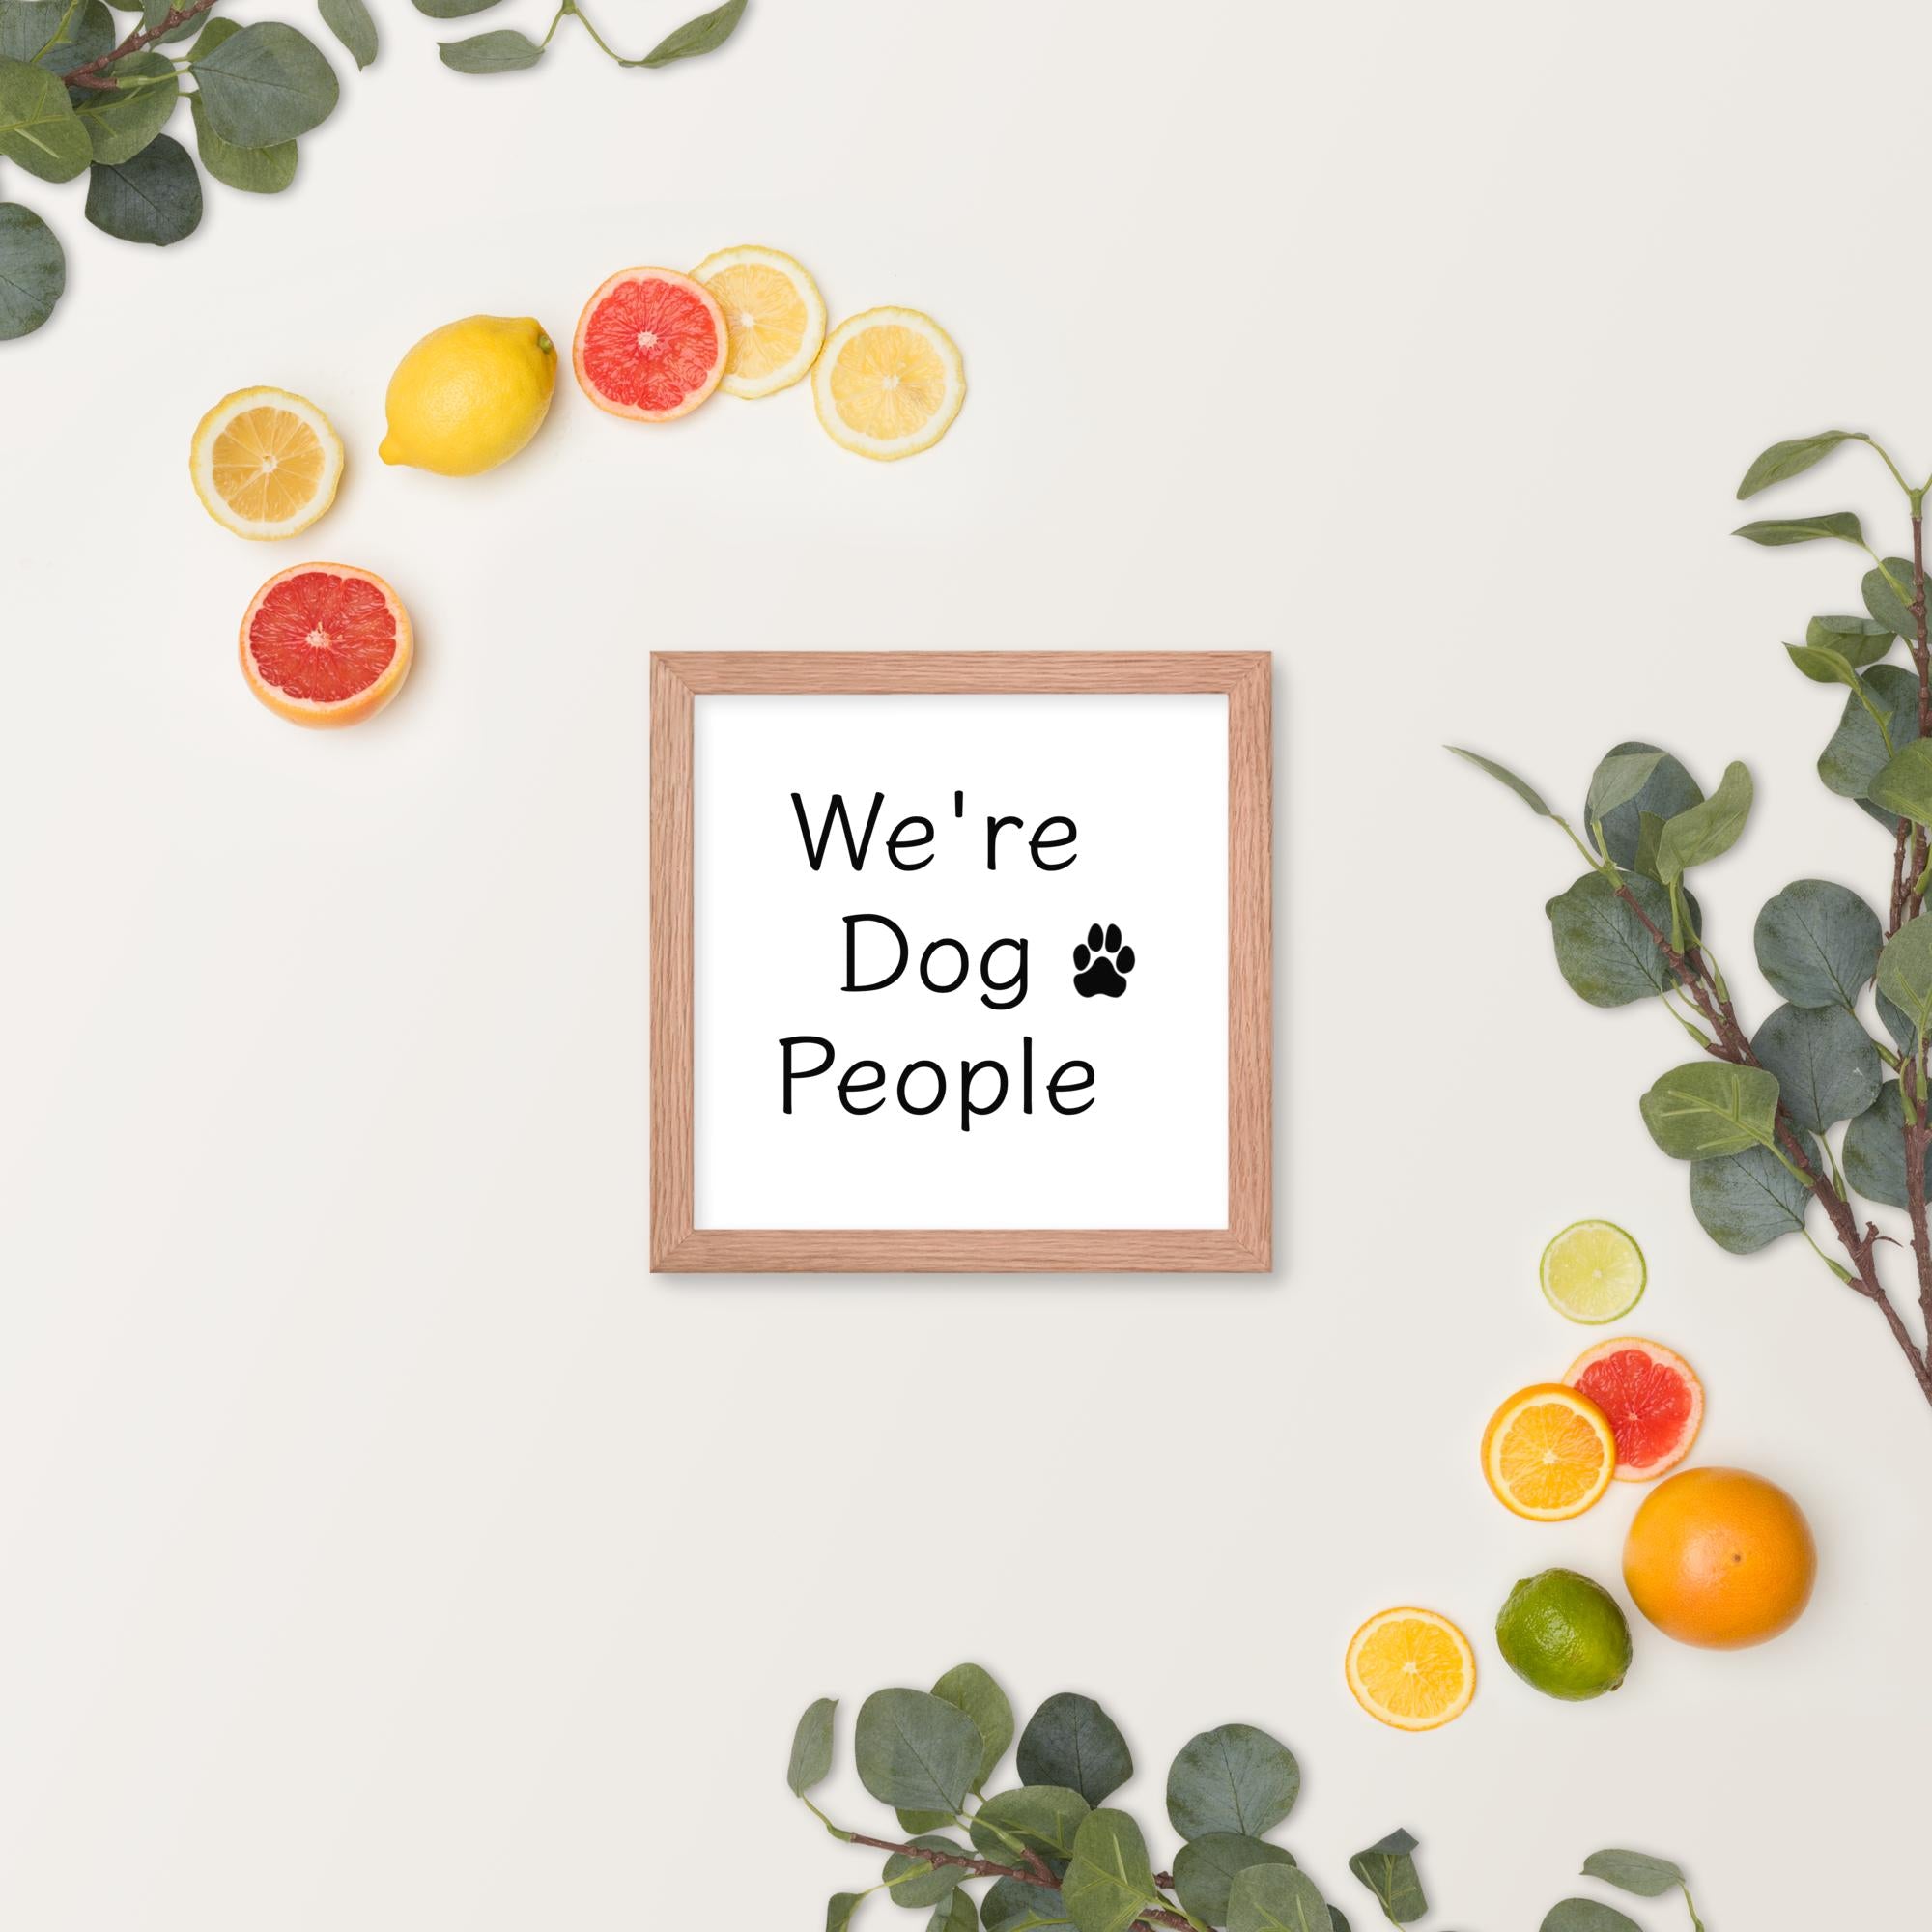 "We're Dog People" Framed poster